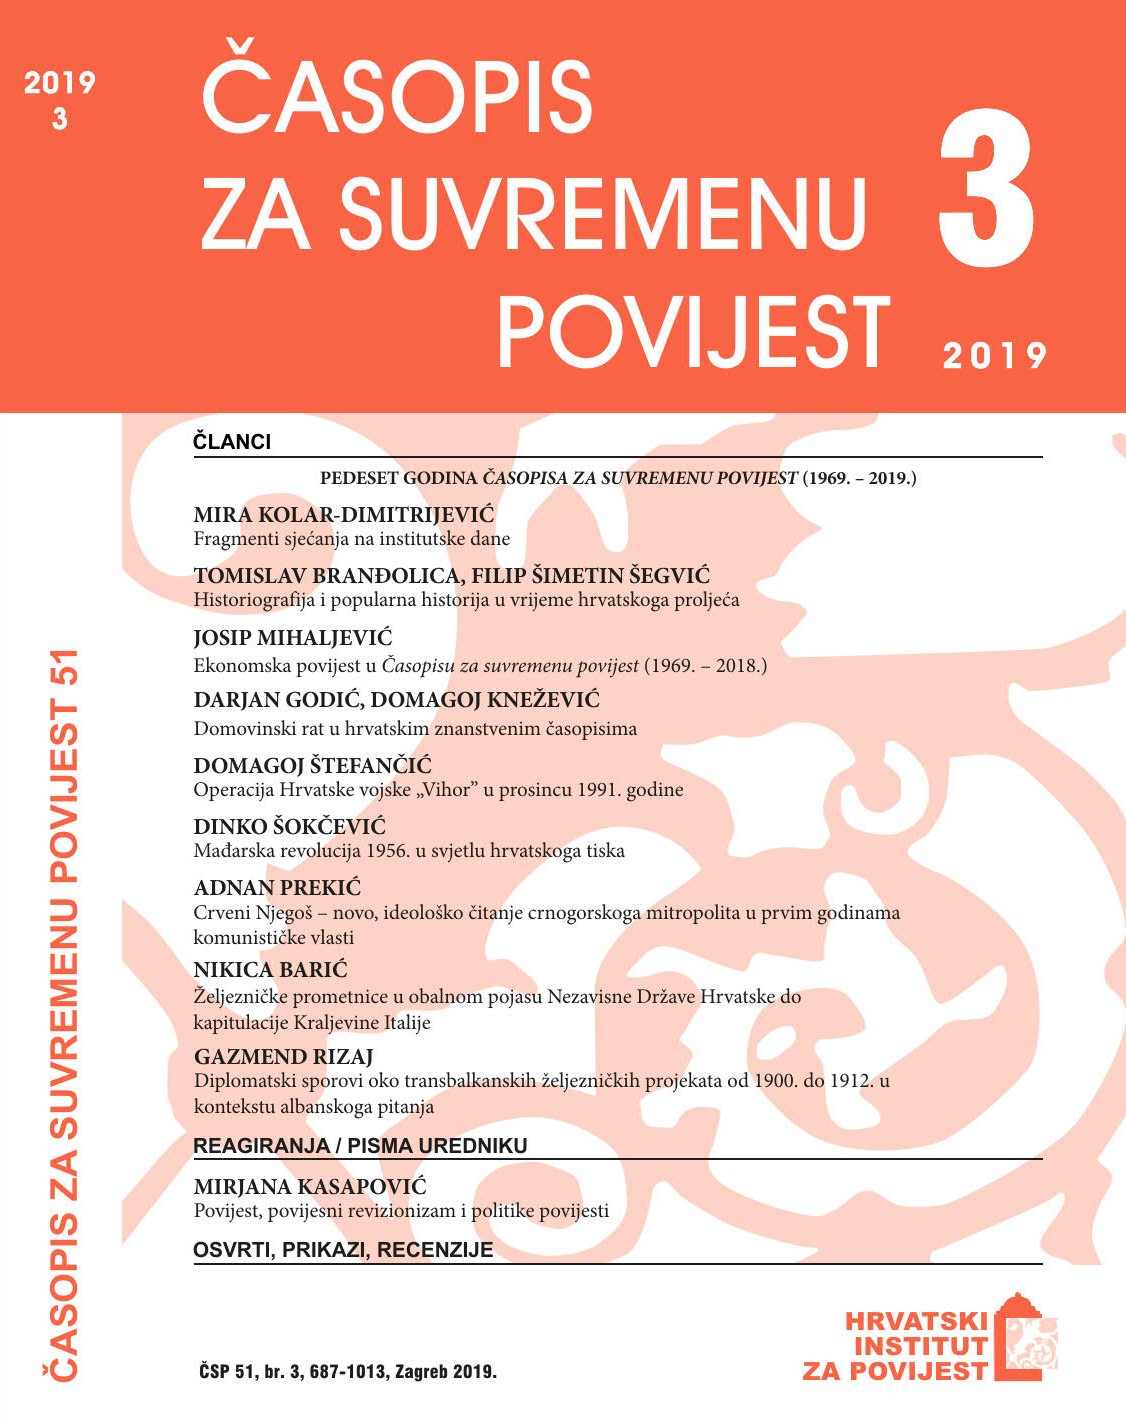 Domovinski rat u hrvatskim znanstvenim časopisima